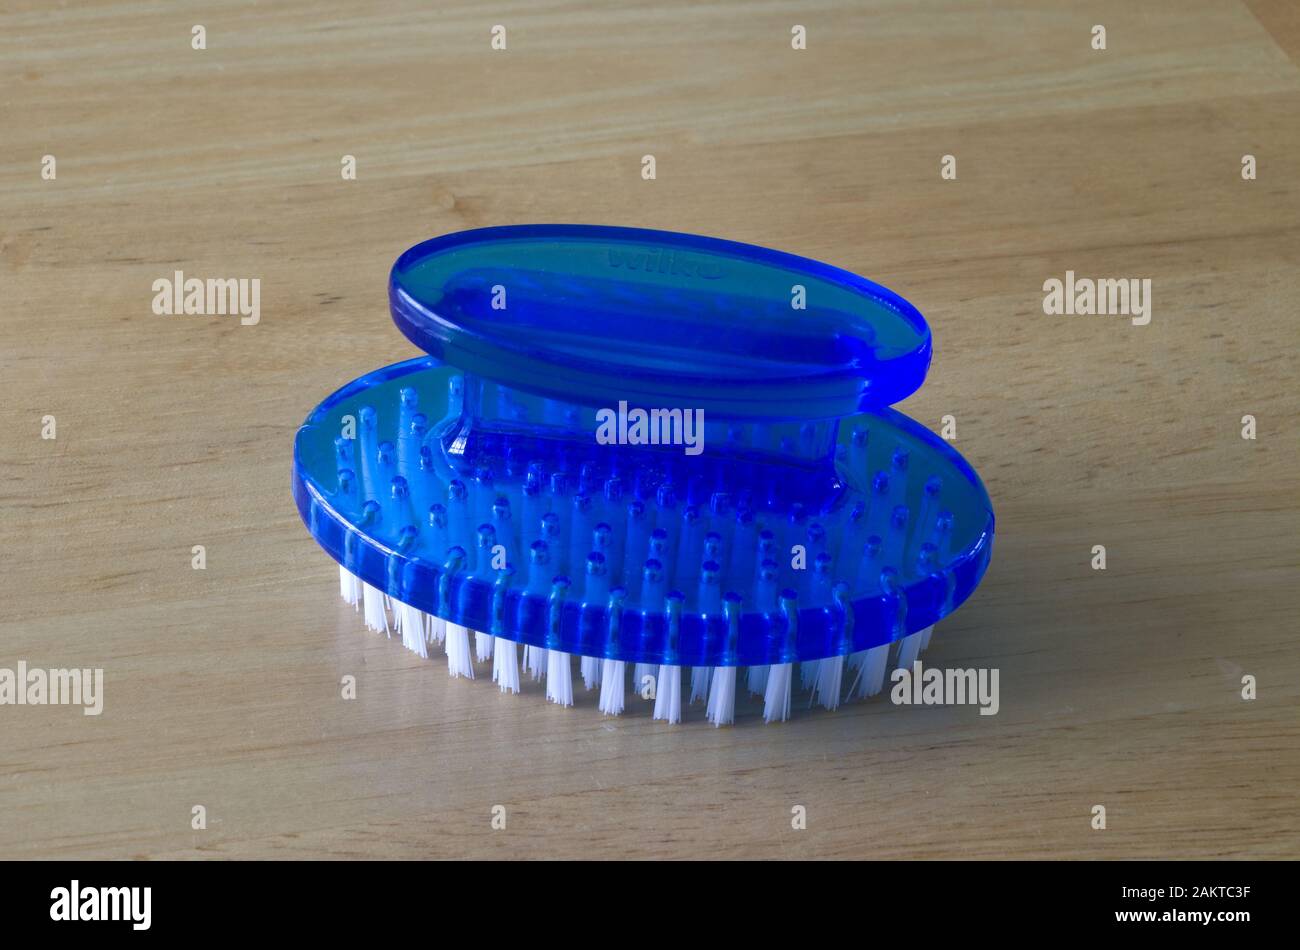 Blue Plastic Nailbrush or Nail Brush Stock Photo